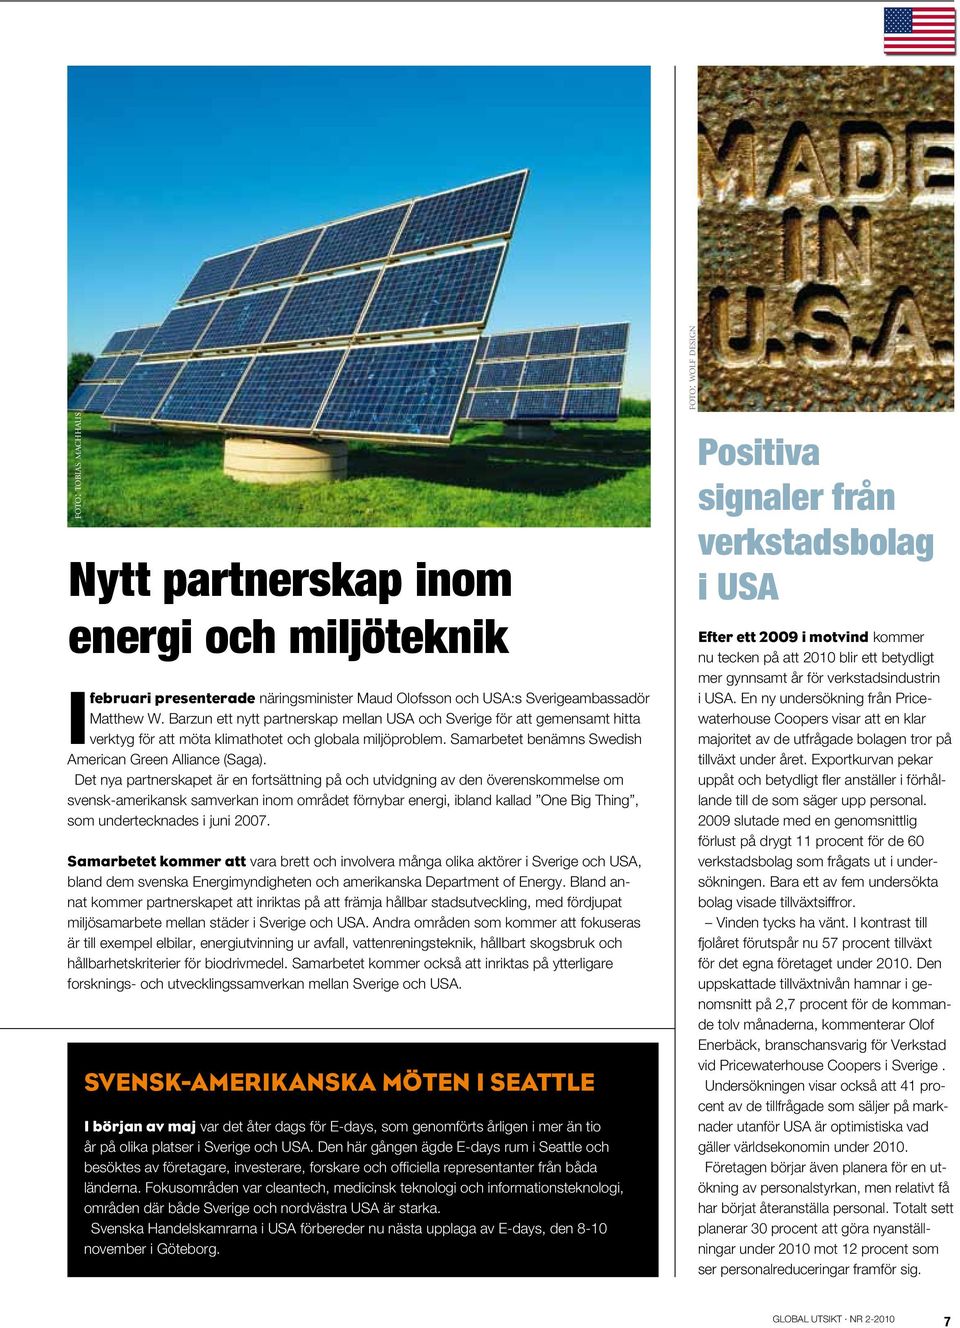 Det nya partnerskapet är en fortsättning på och utvidgning av den överenskommelse om svensk-amerikansk samverkan inom området förnybar energi, ibland kallad One Big Thing, som undertecknades i juni